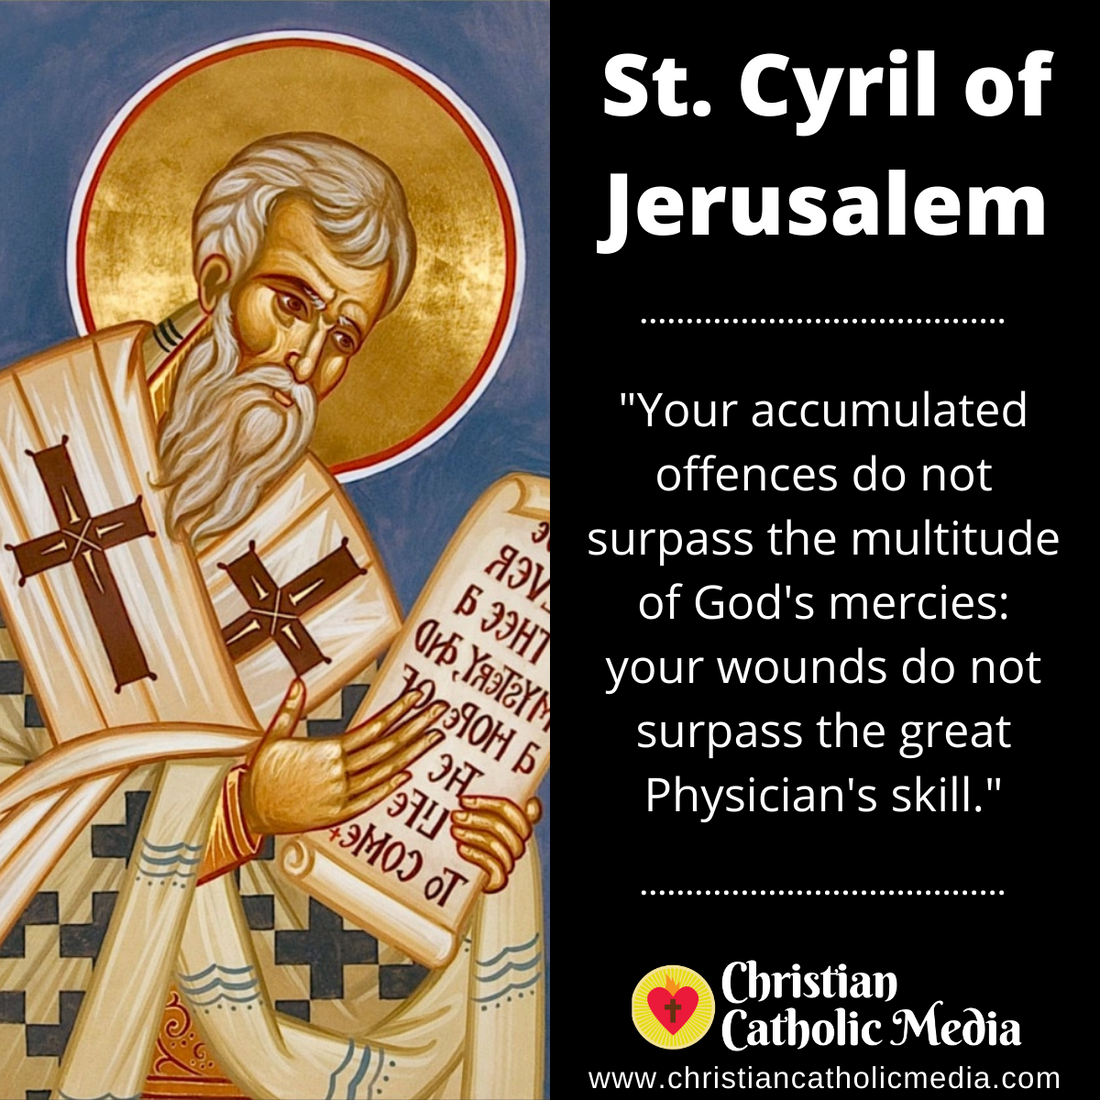 St. Cyril of Jerusalem - Friday March 18, 2022